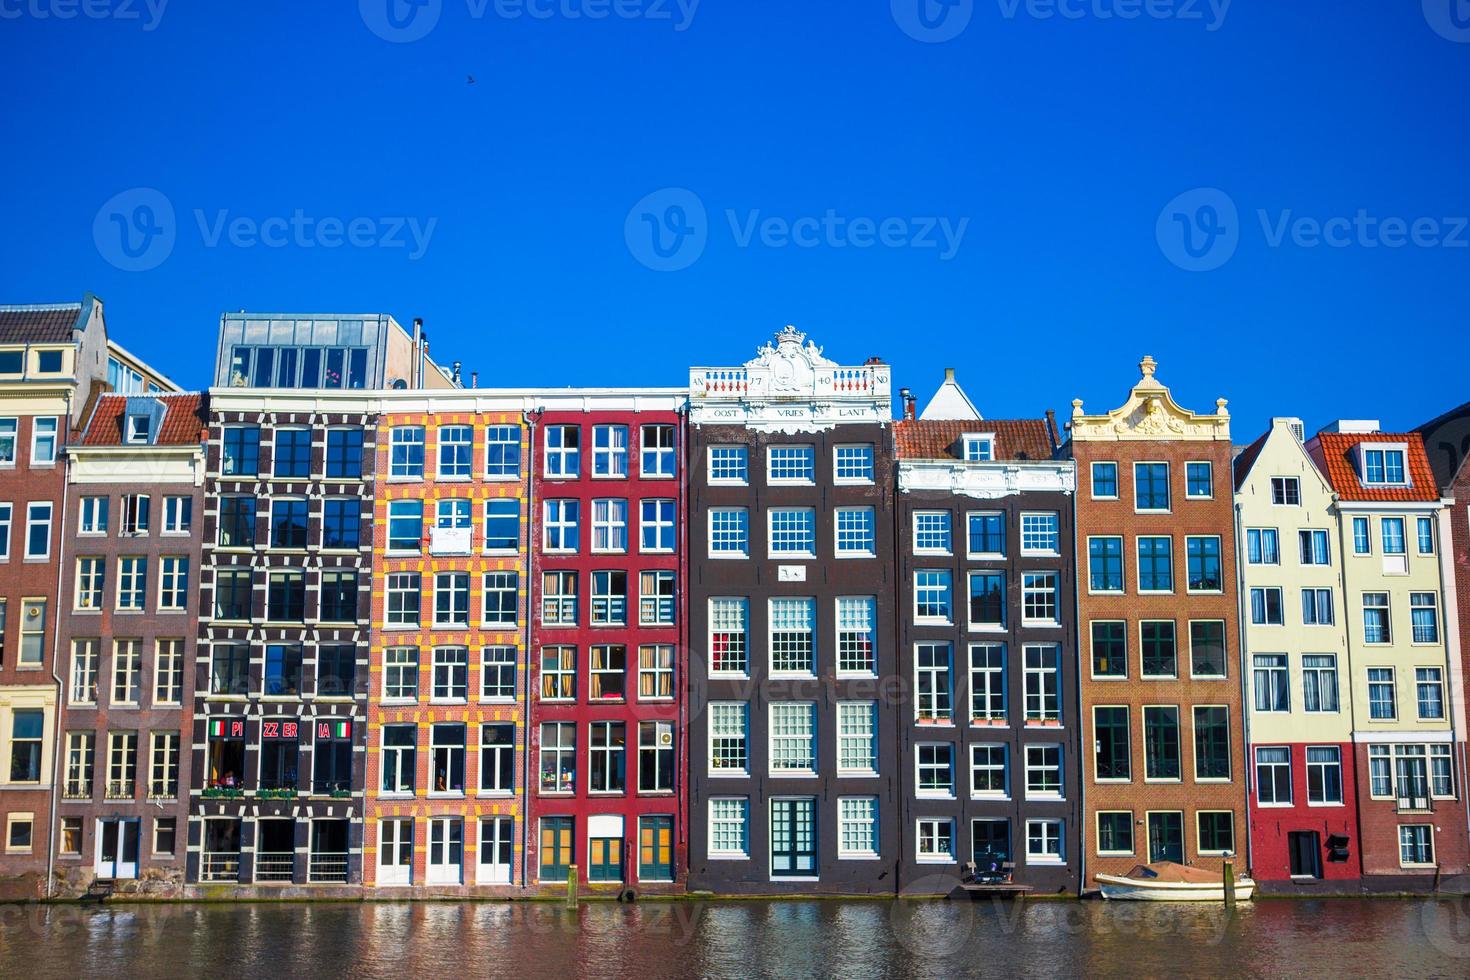 casas medievales holandesas tradicionales en amsterdam, capital de holanda foto